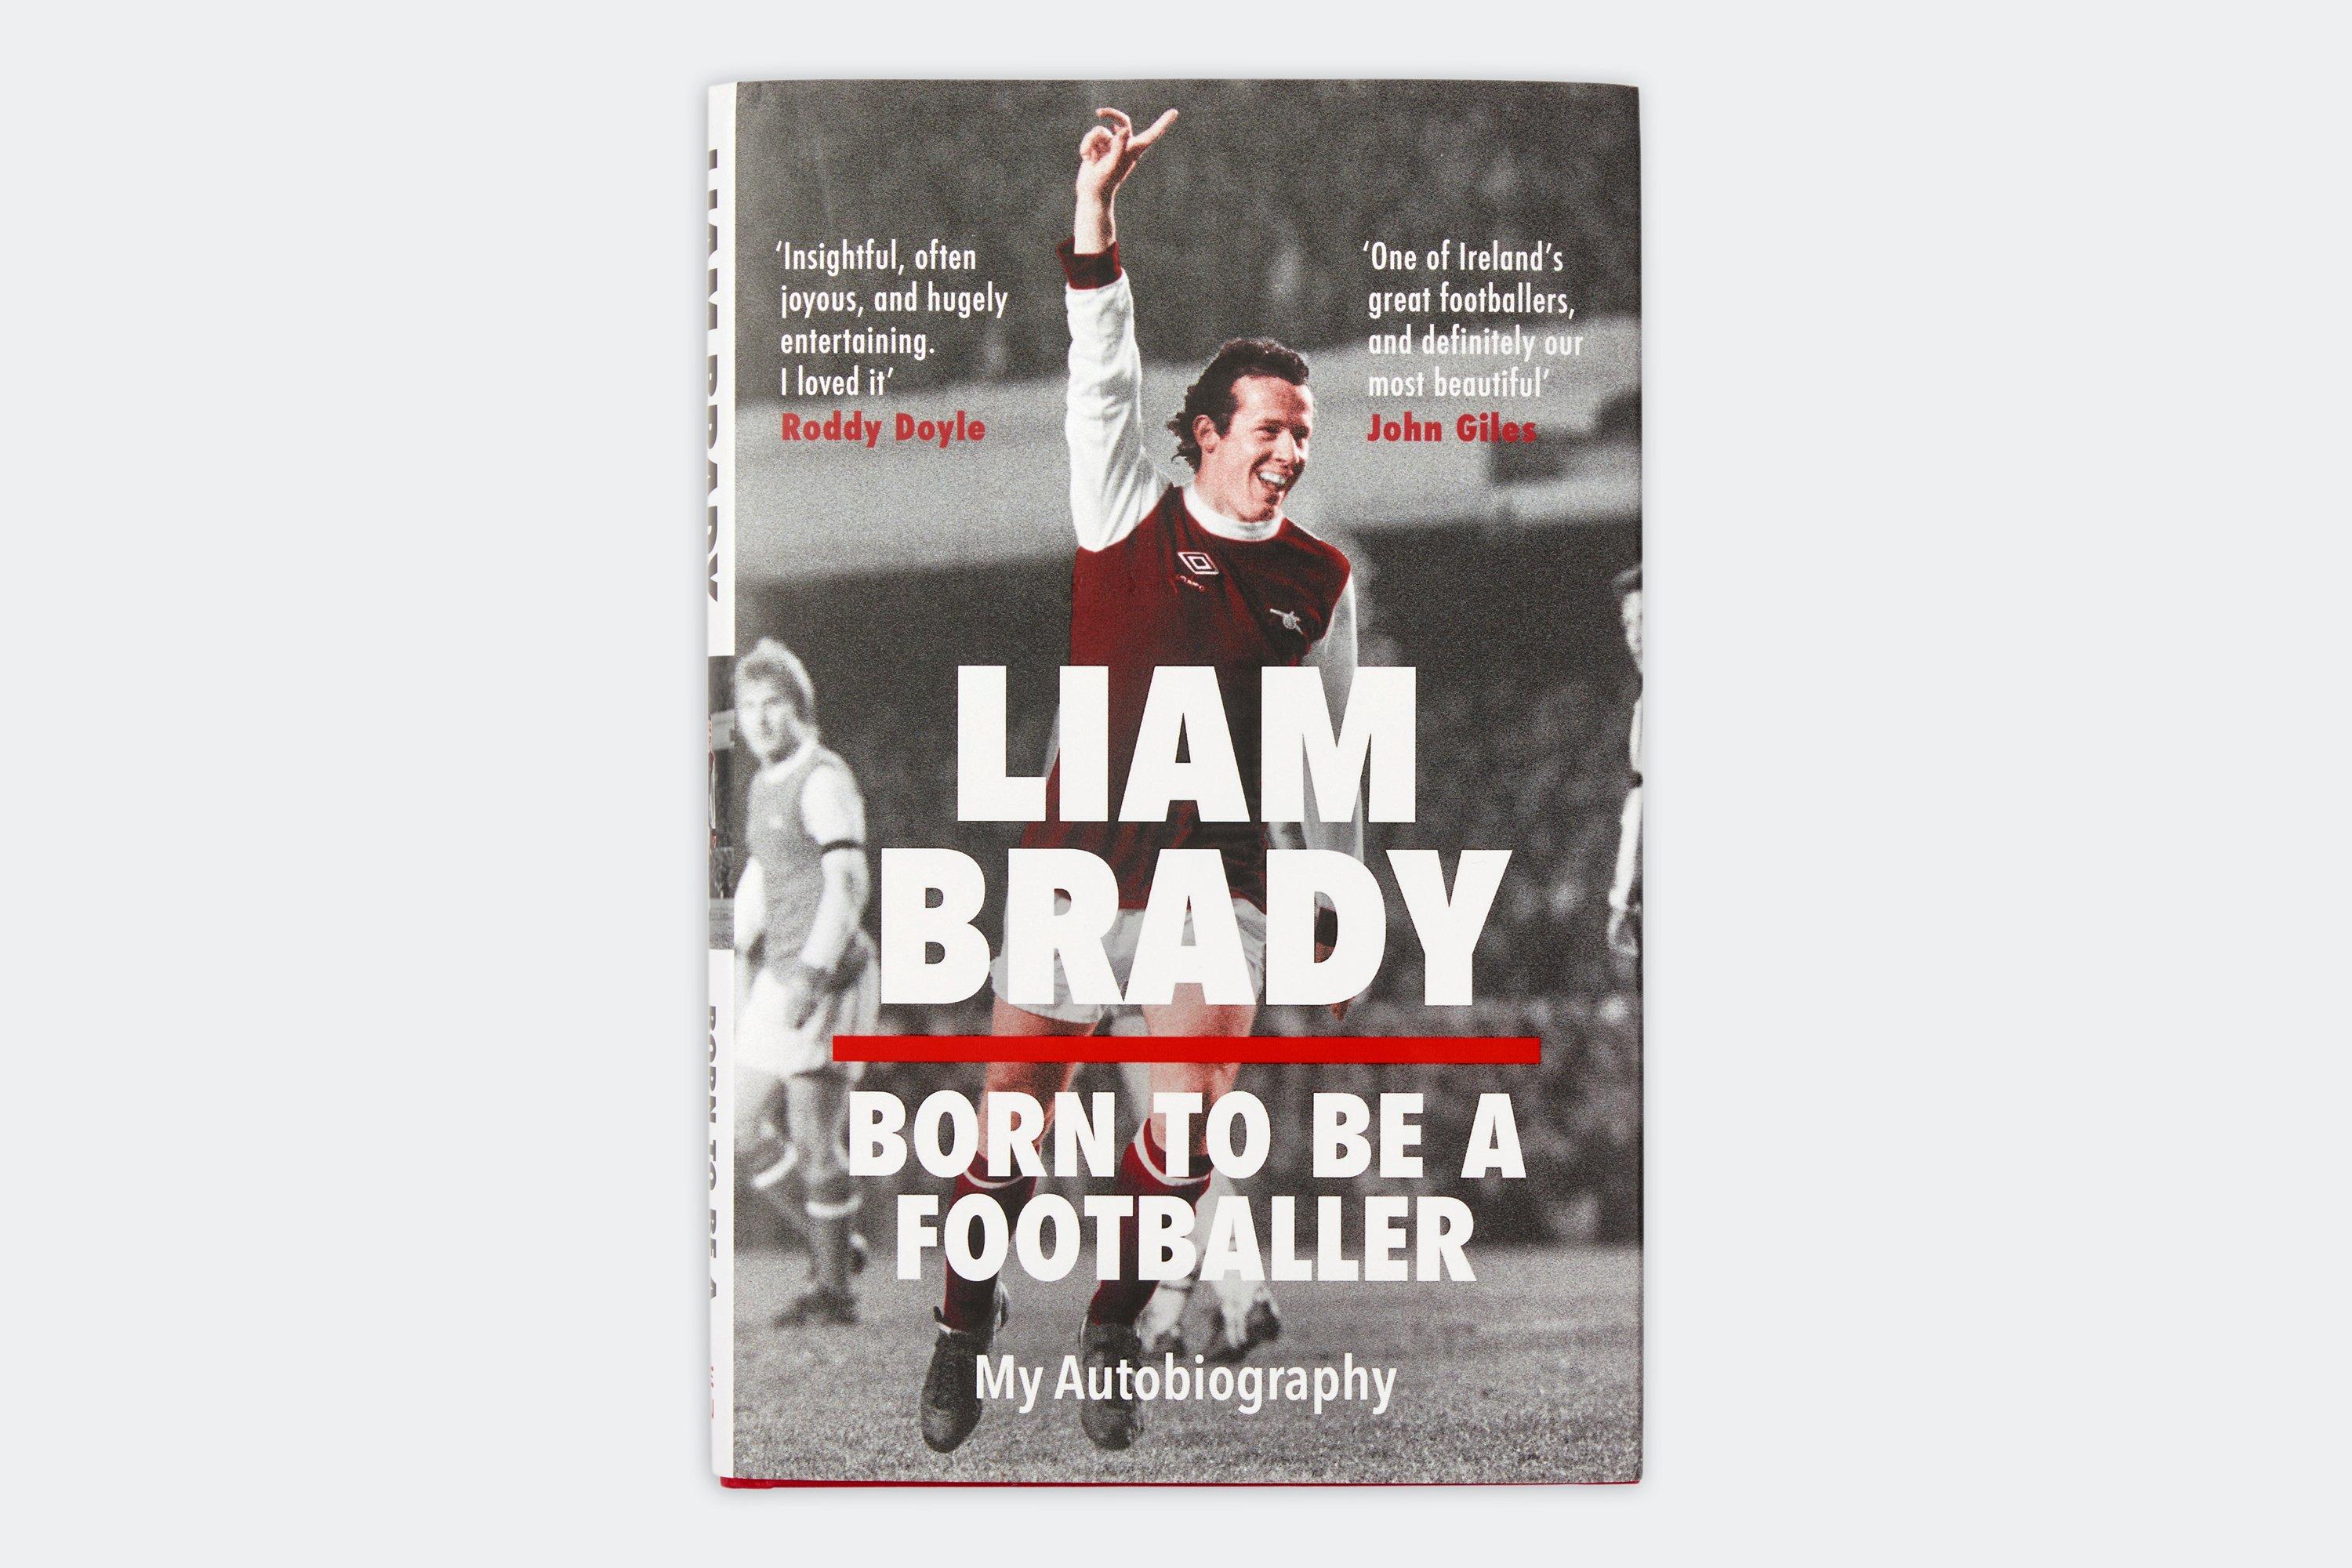 Liam Brady Autobiography